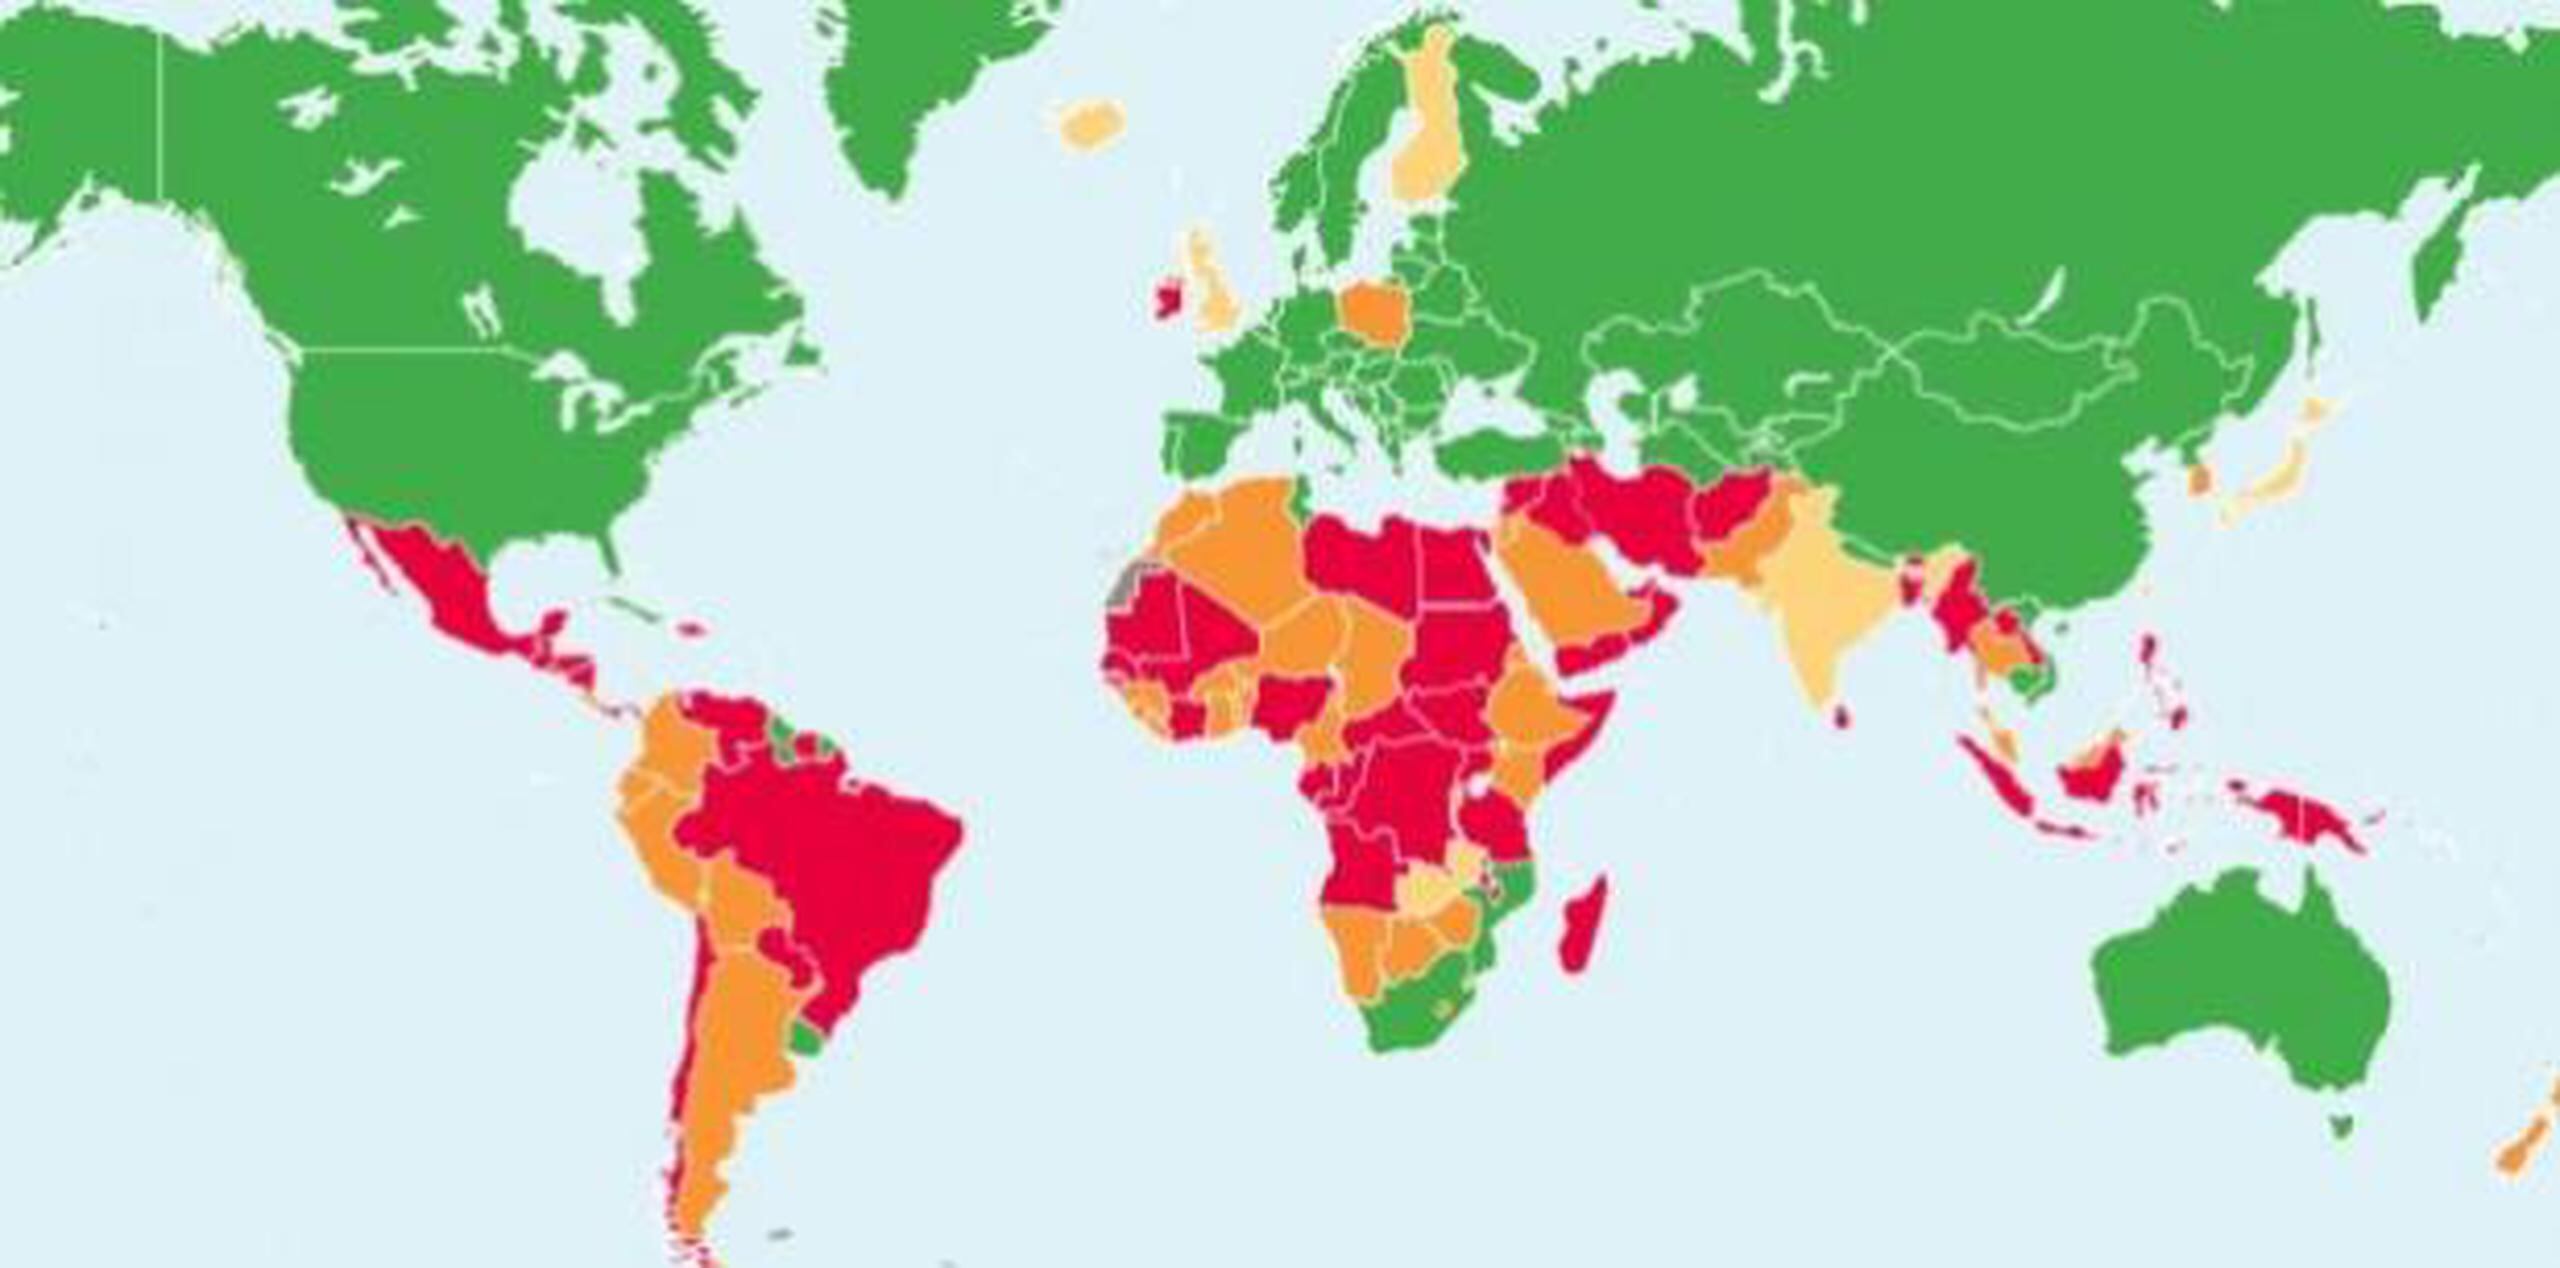 La ONG Centro de Derechos Reproductivos compartió un mapa en el que se ilustra el mayor o menor grado en el que los países permiten el acceso al aborto en 2018. (GDA)